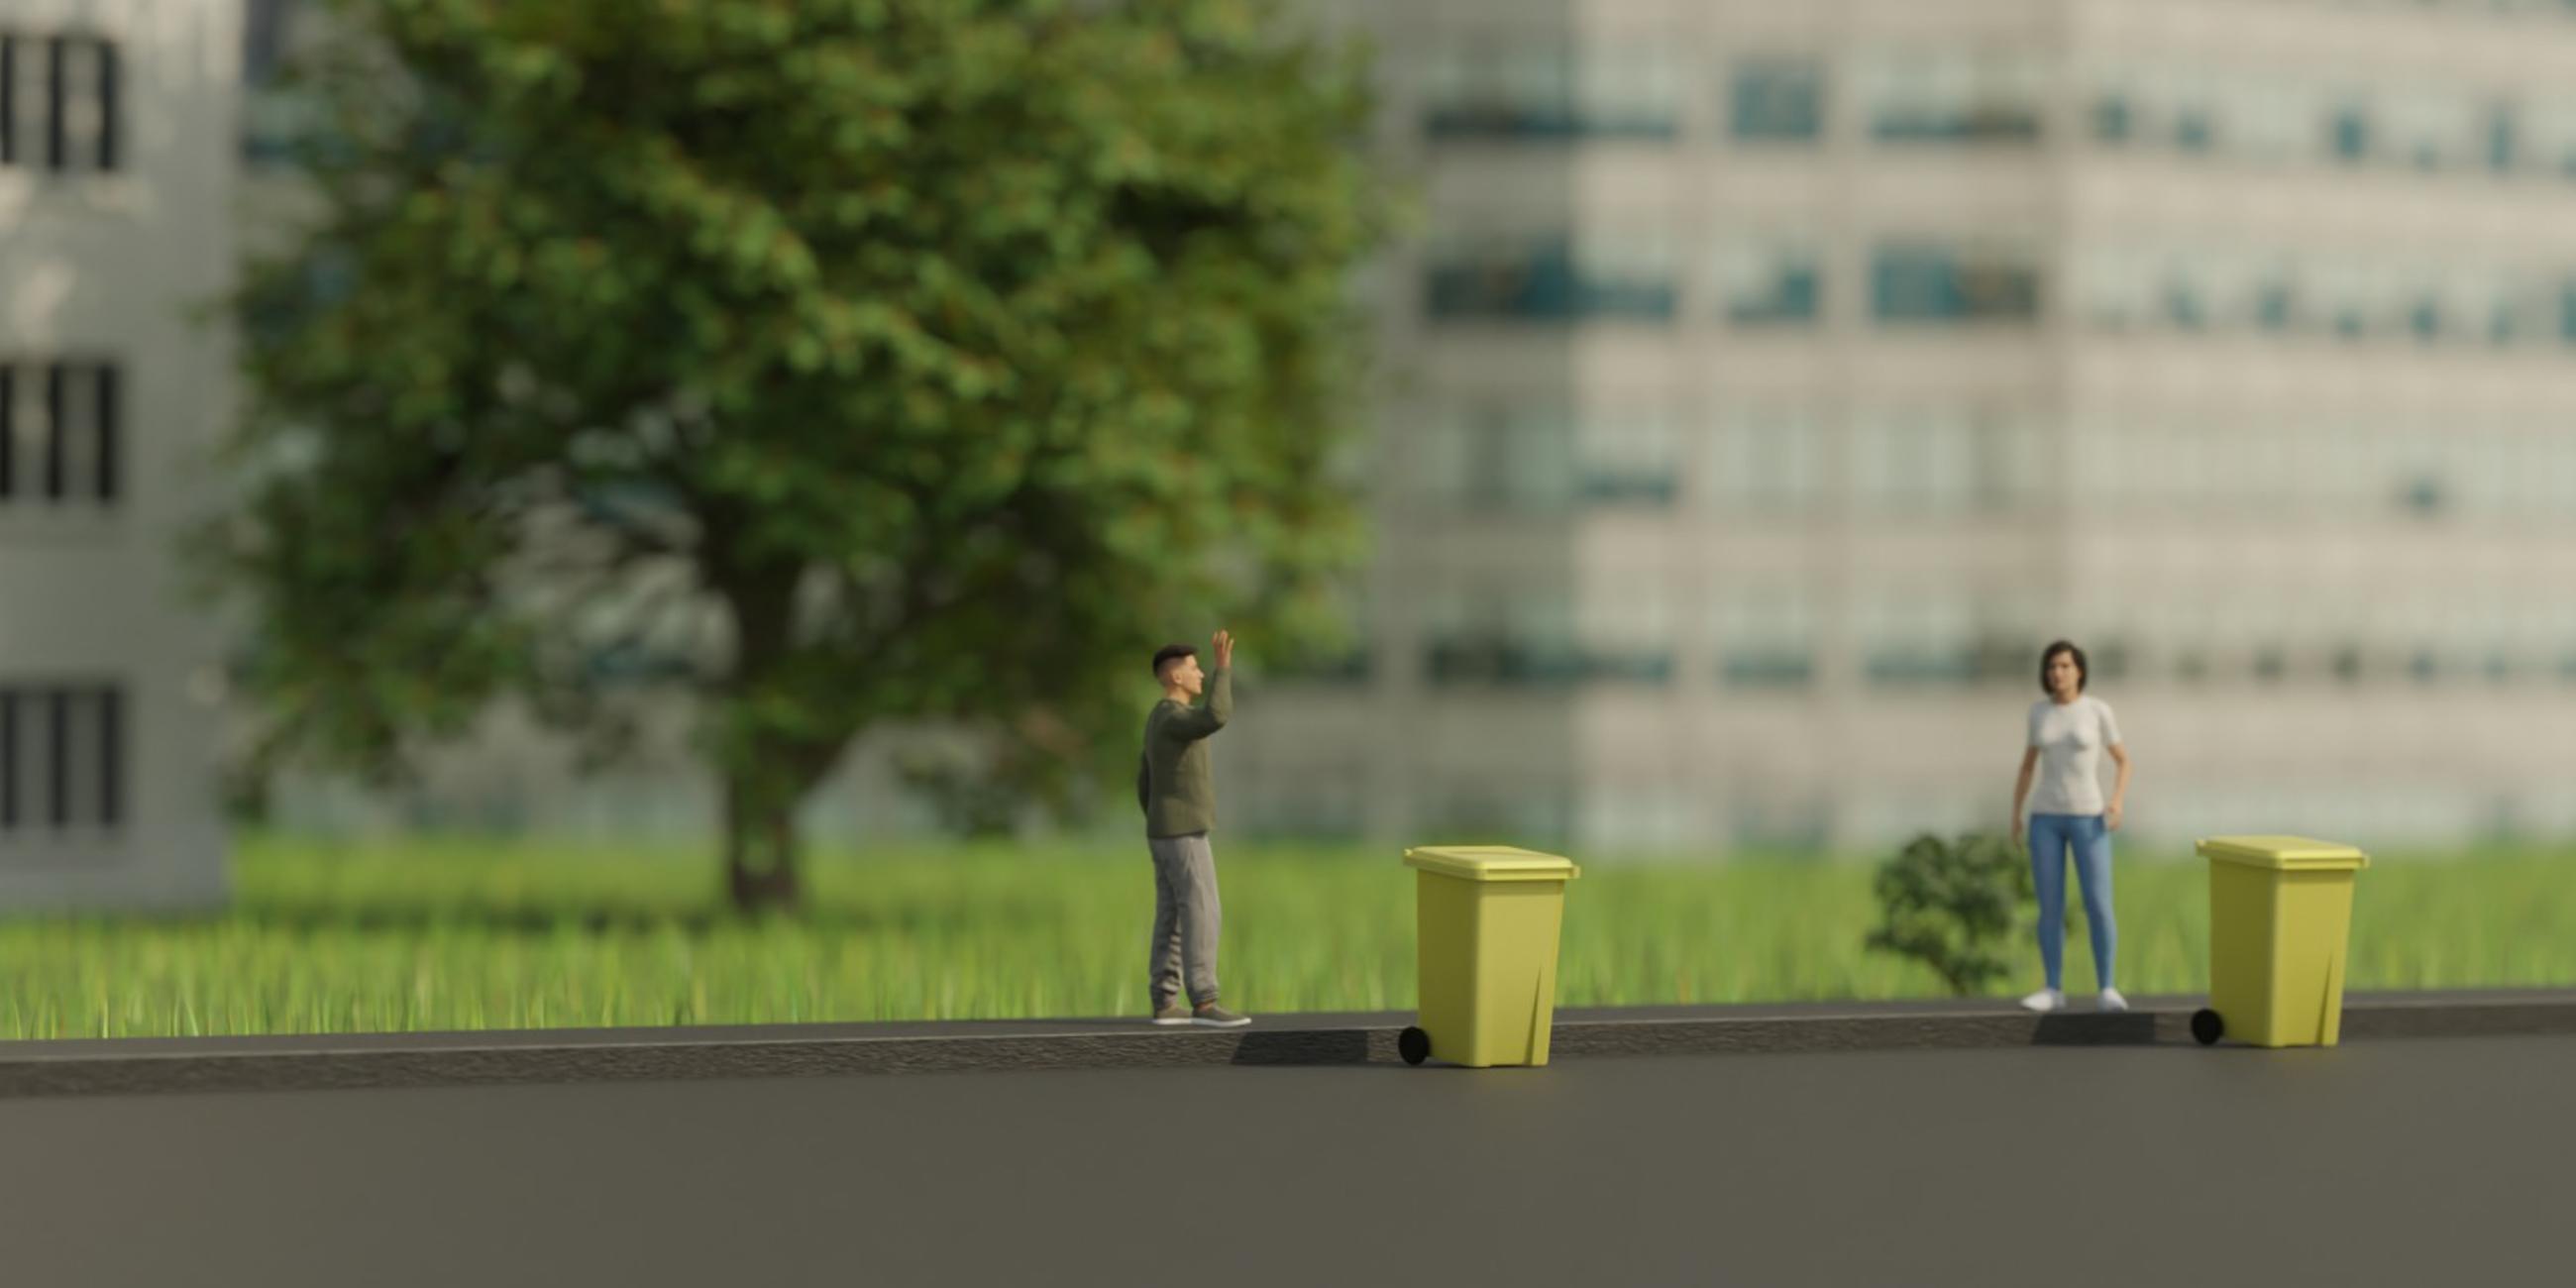 Symbolbild für die Story zum Thema wie Müll recycelt wird. Auf dem Bild sind zwei Personen zu sehen, die an einer gelben Tonne stehen. 